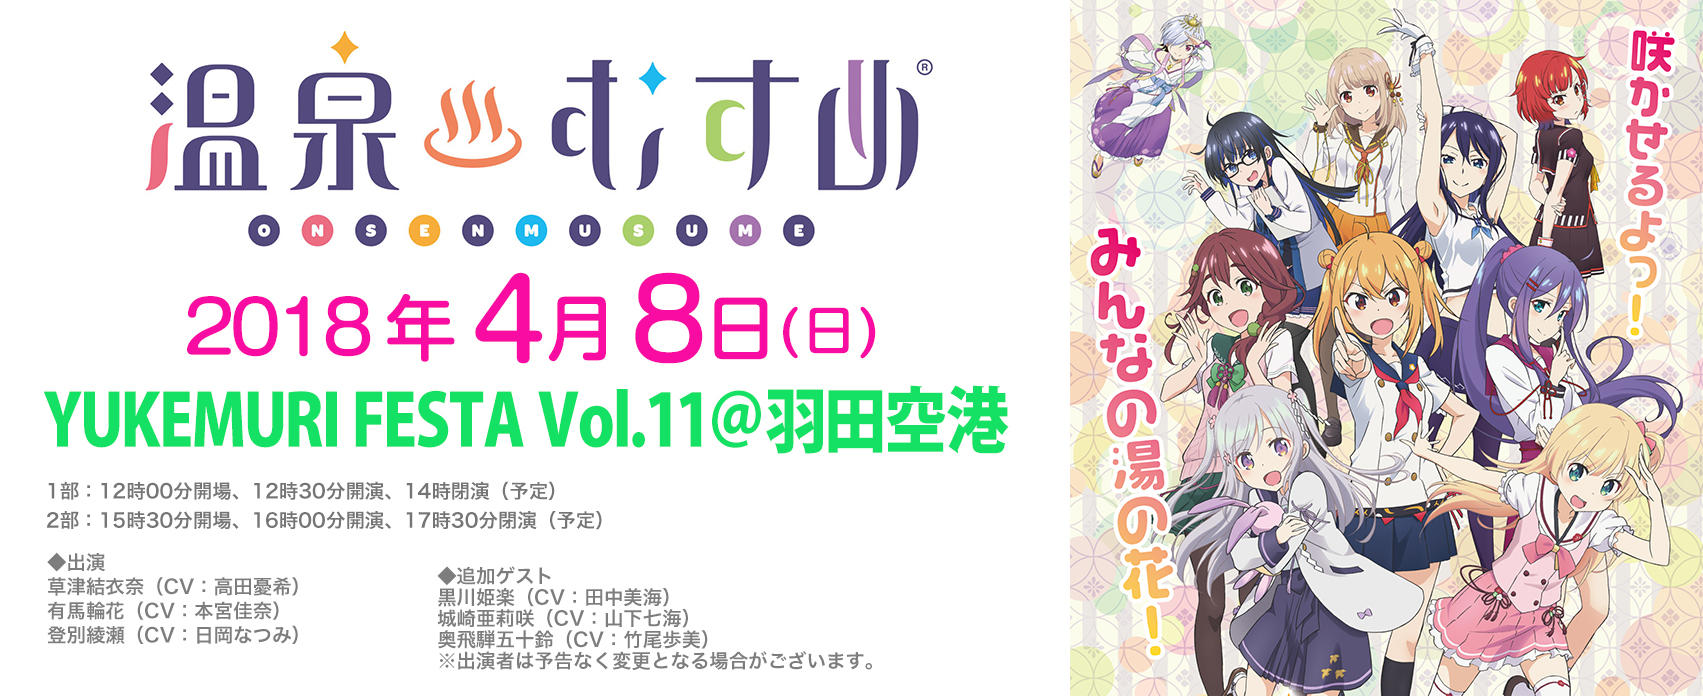 Yukemuri Festa Vol 11 羽田空港 東京のイベントスペース Tiat Sky Hall